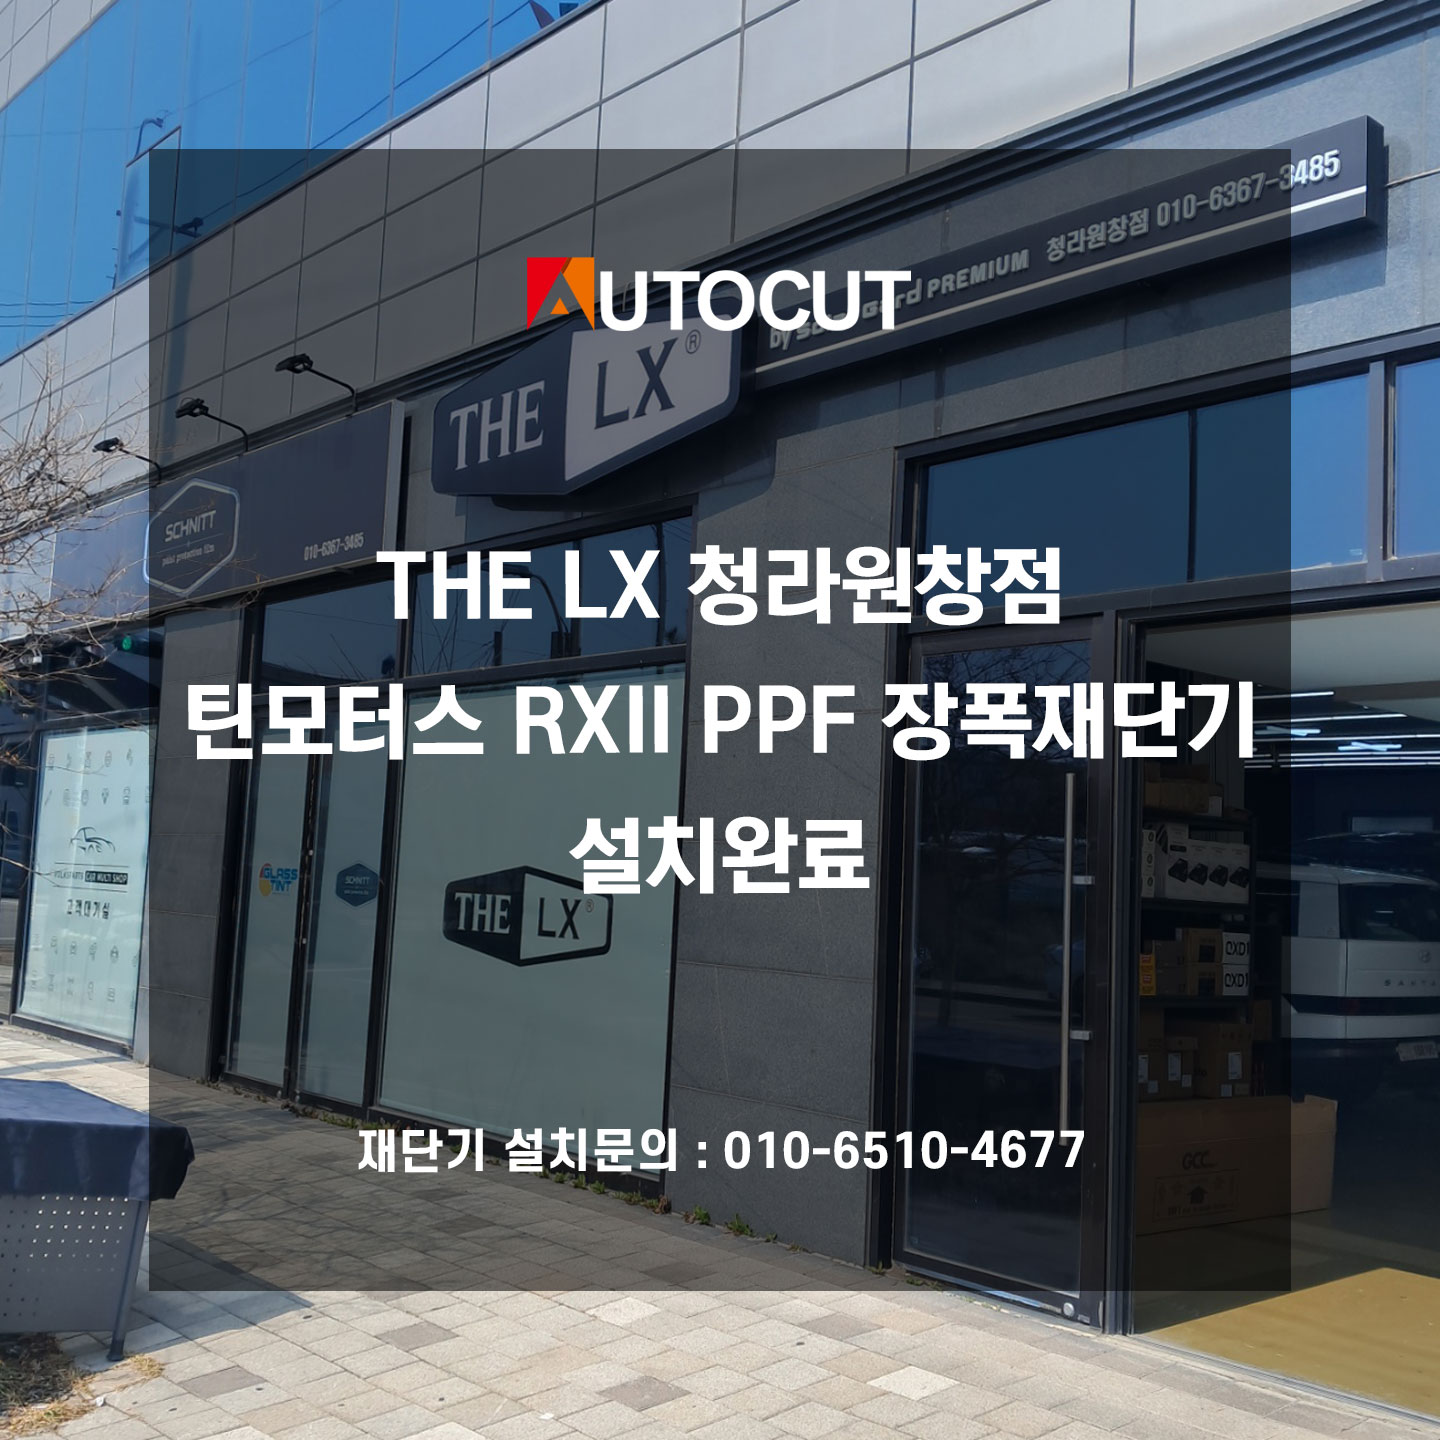 THE LX 청라원창점 틴모터스 RXII PPF 장폭재단기 설치완료